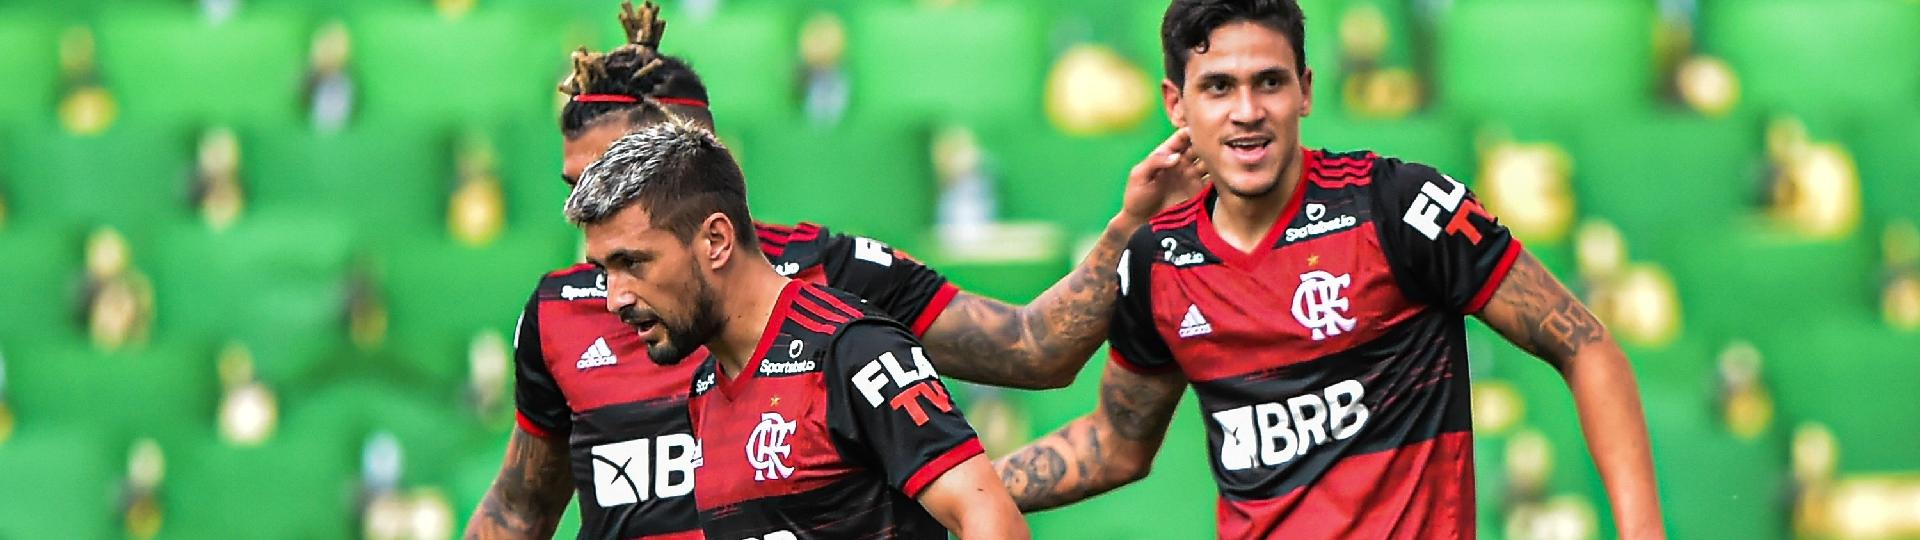 Pedro comemora seu gol com Gabigol e Arrascaeta na final do Carioca entre Fluminense e Flamengo